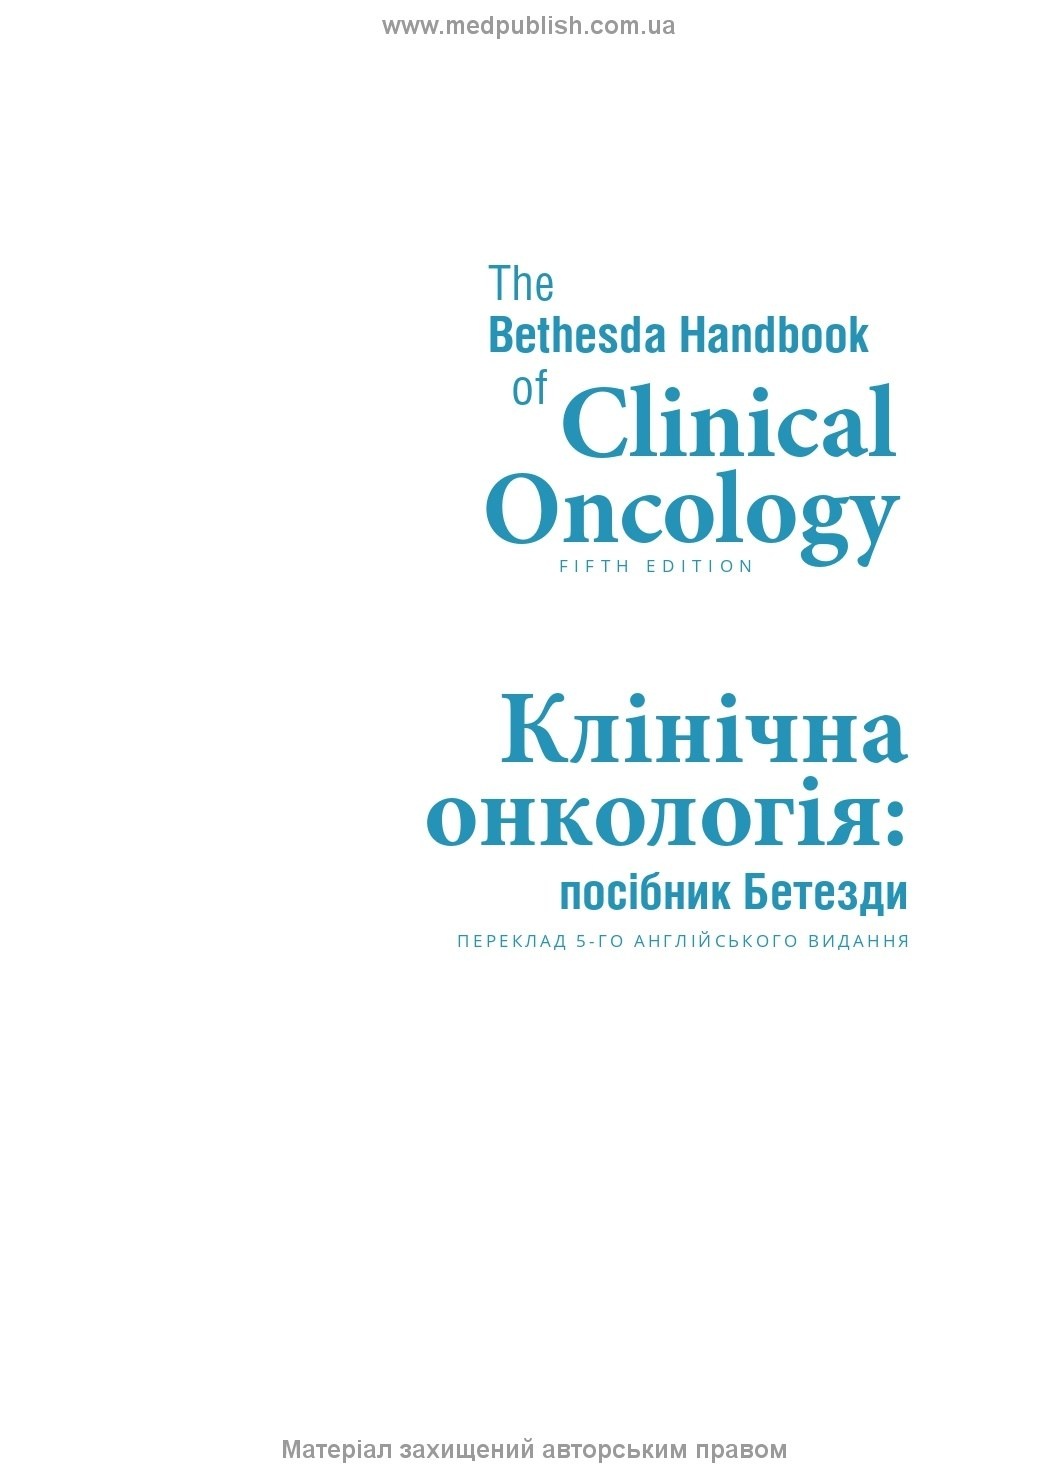 Клінічна онкологія: посібник Бетезди: 5-е видання. Автор — Джейм Абрагам. 